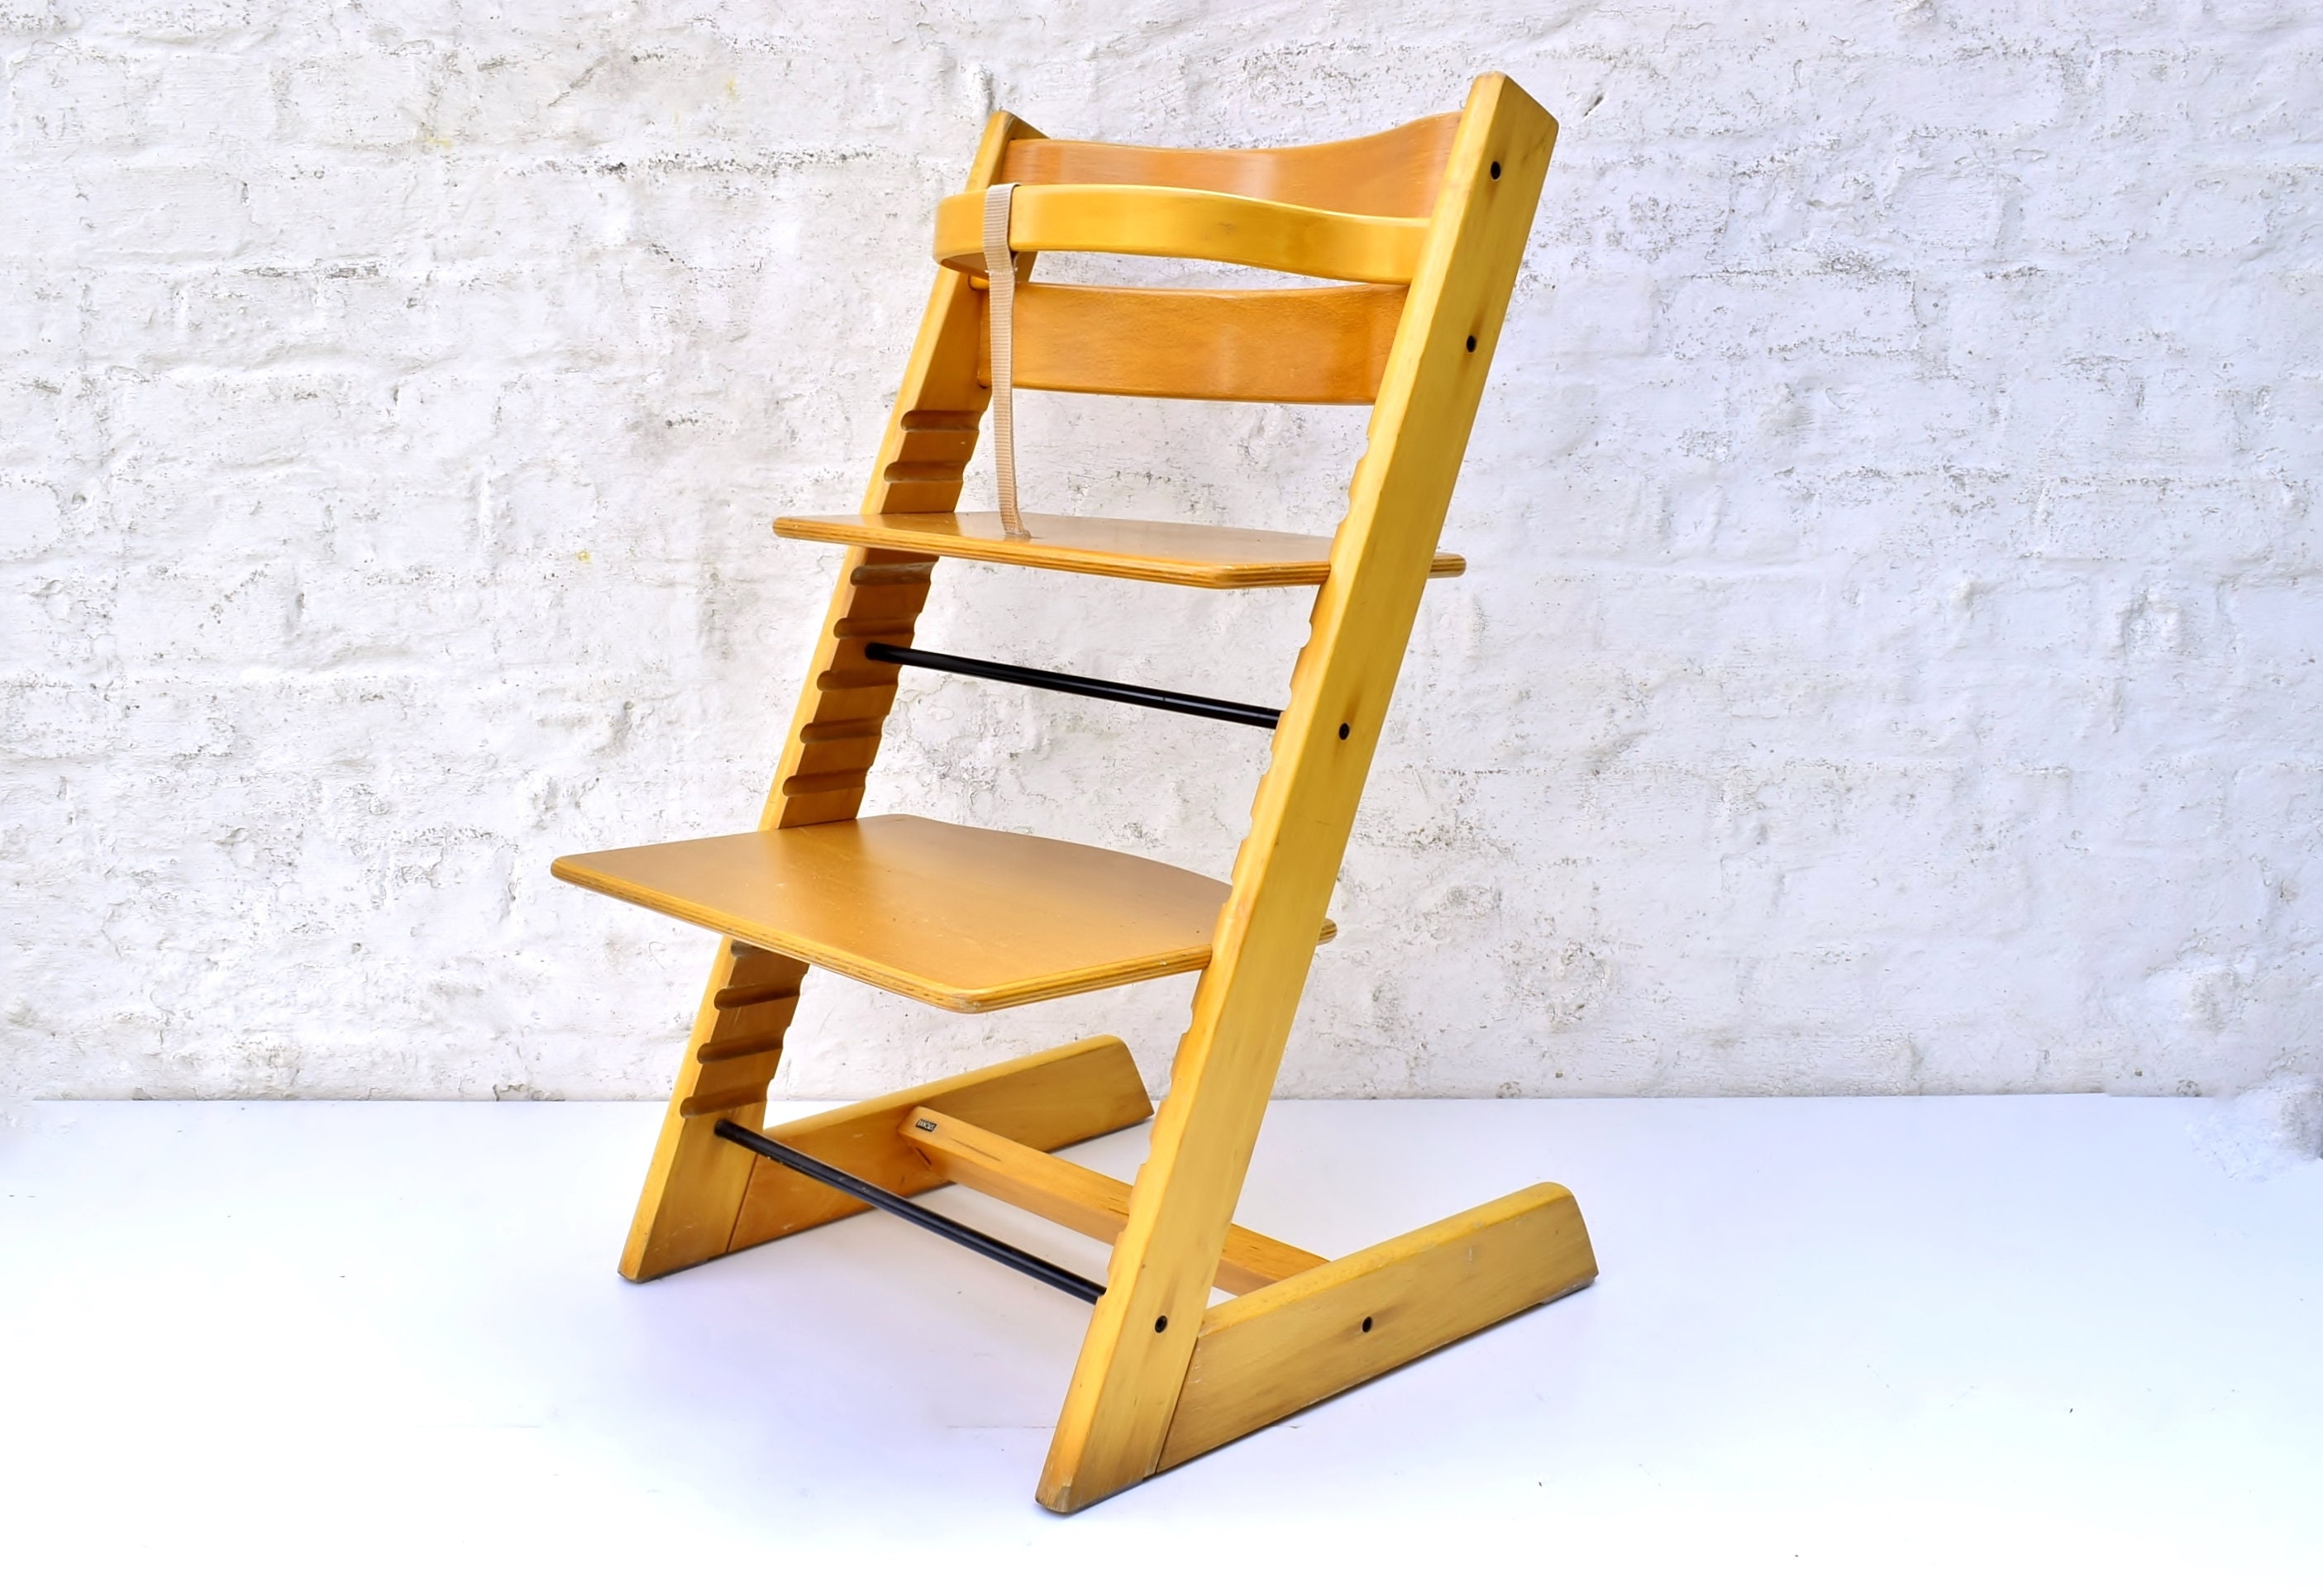 Vintage Stokke Tripp Trapp sedia lunga vecchio modello-retrò alta  regolabile mobili per bambini con staffa in legno-design norvegese da prima  2000. -  Italia